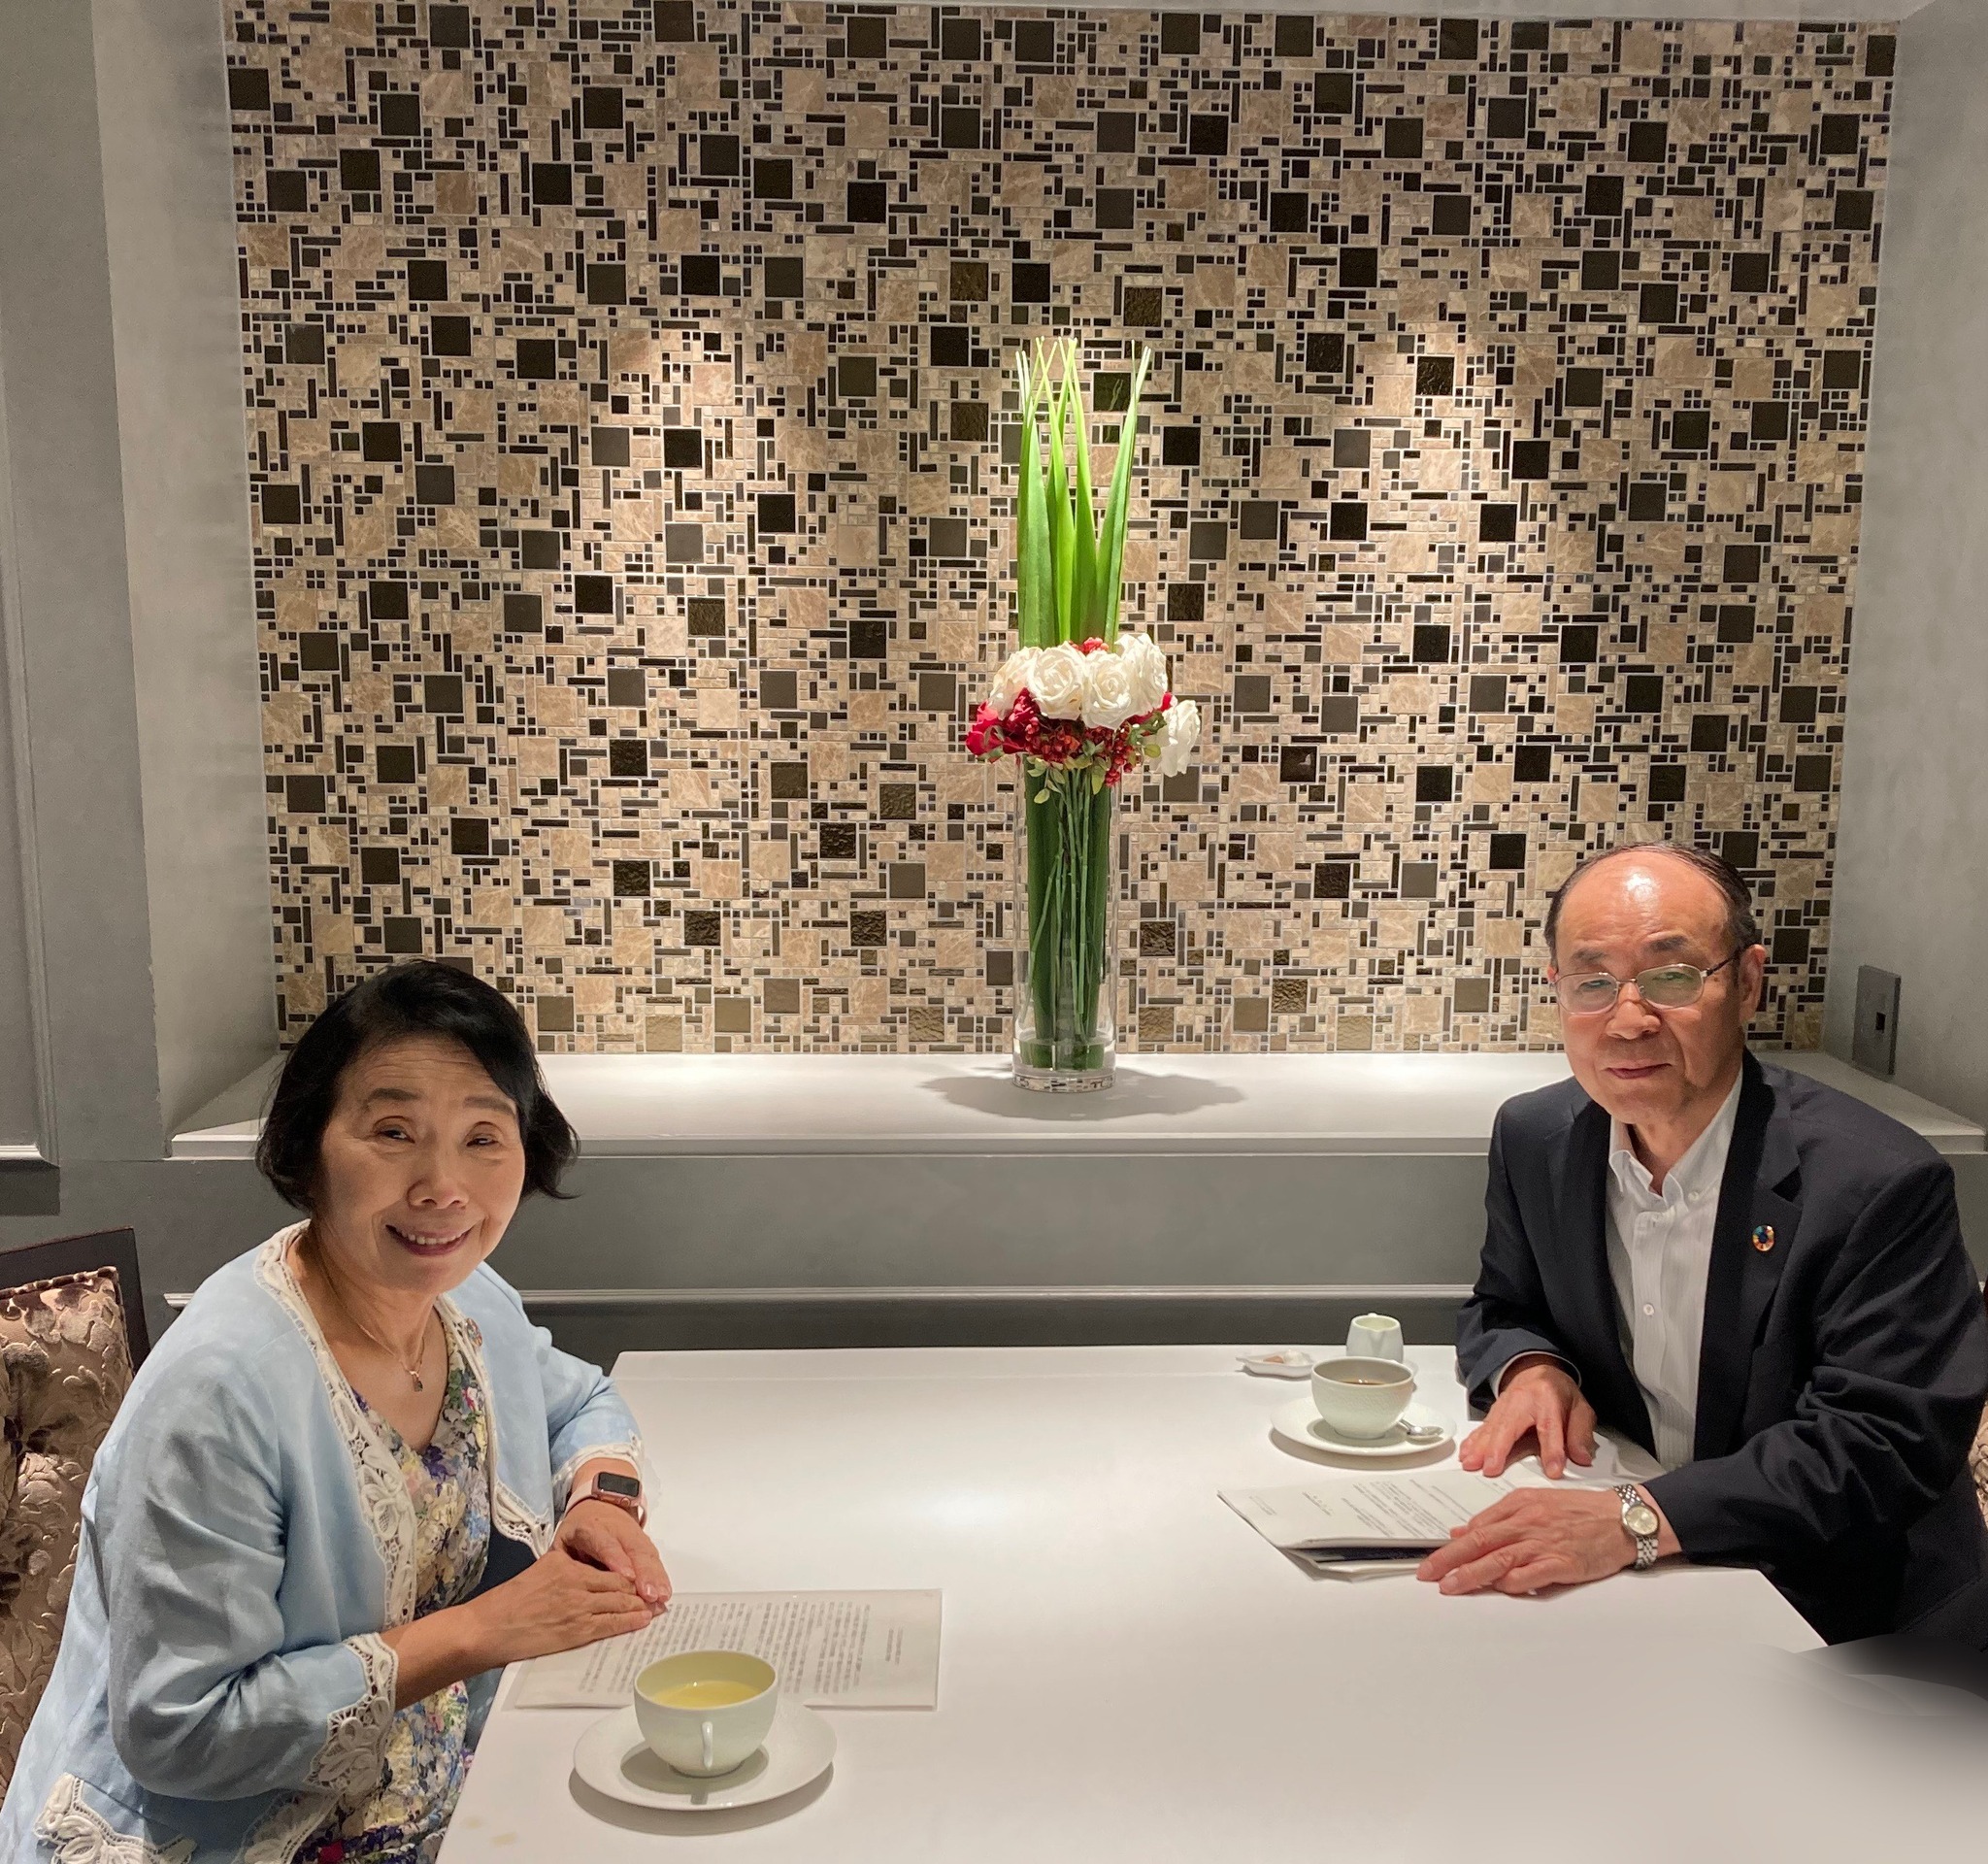 日本経済団体連合会副会長の渡邉光一郎さんと対話しました。